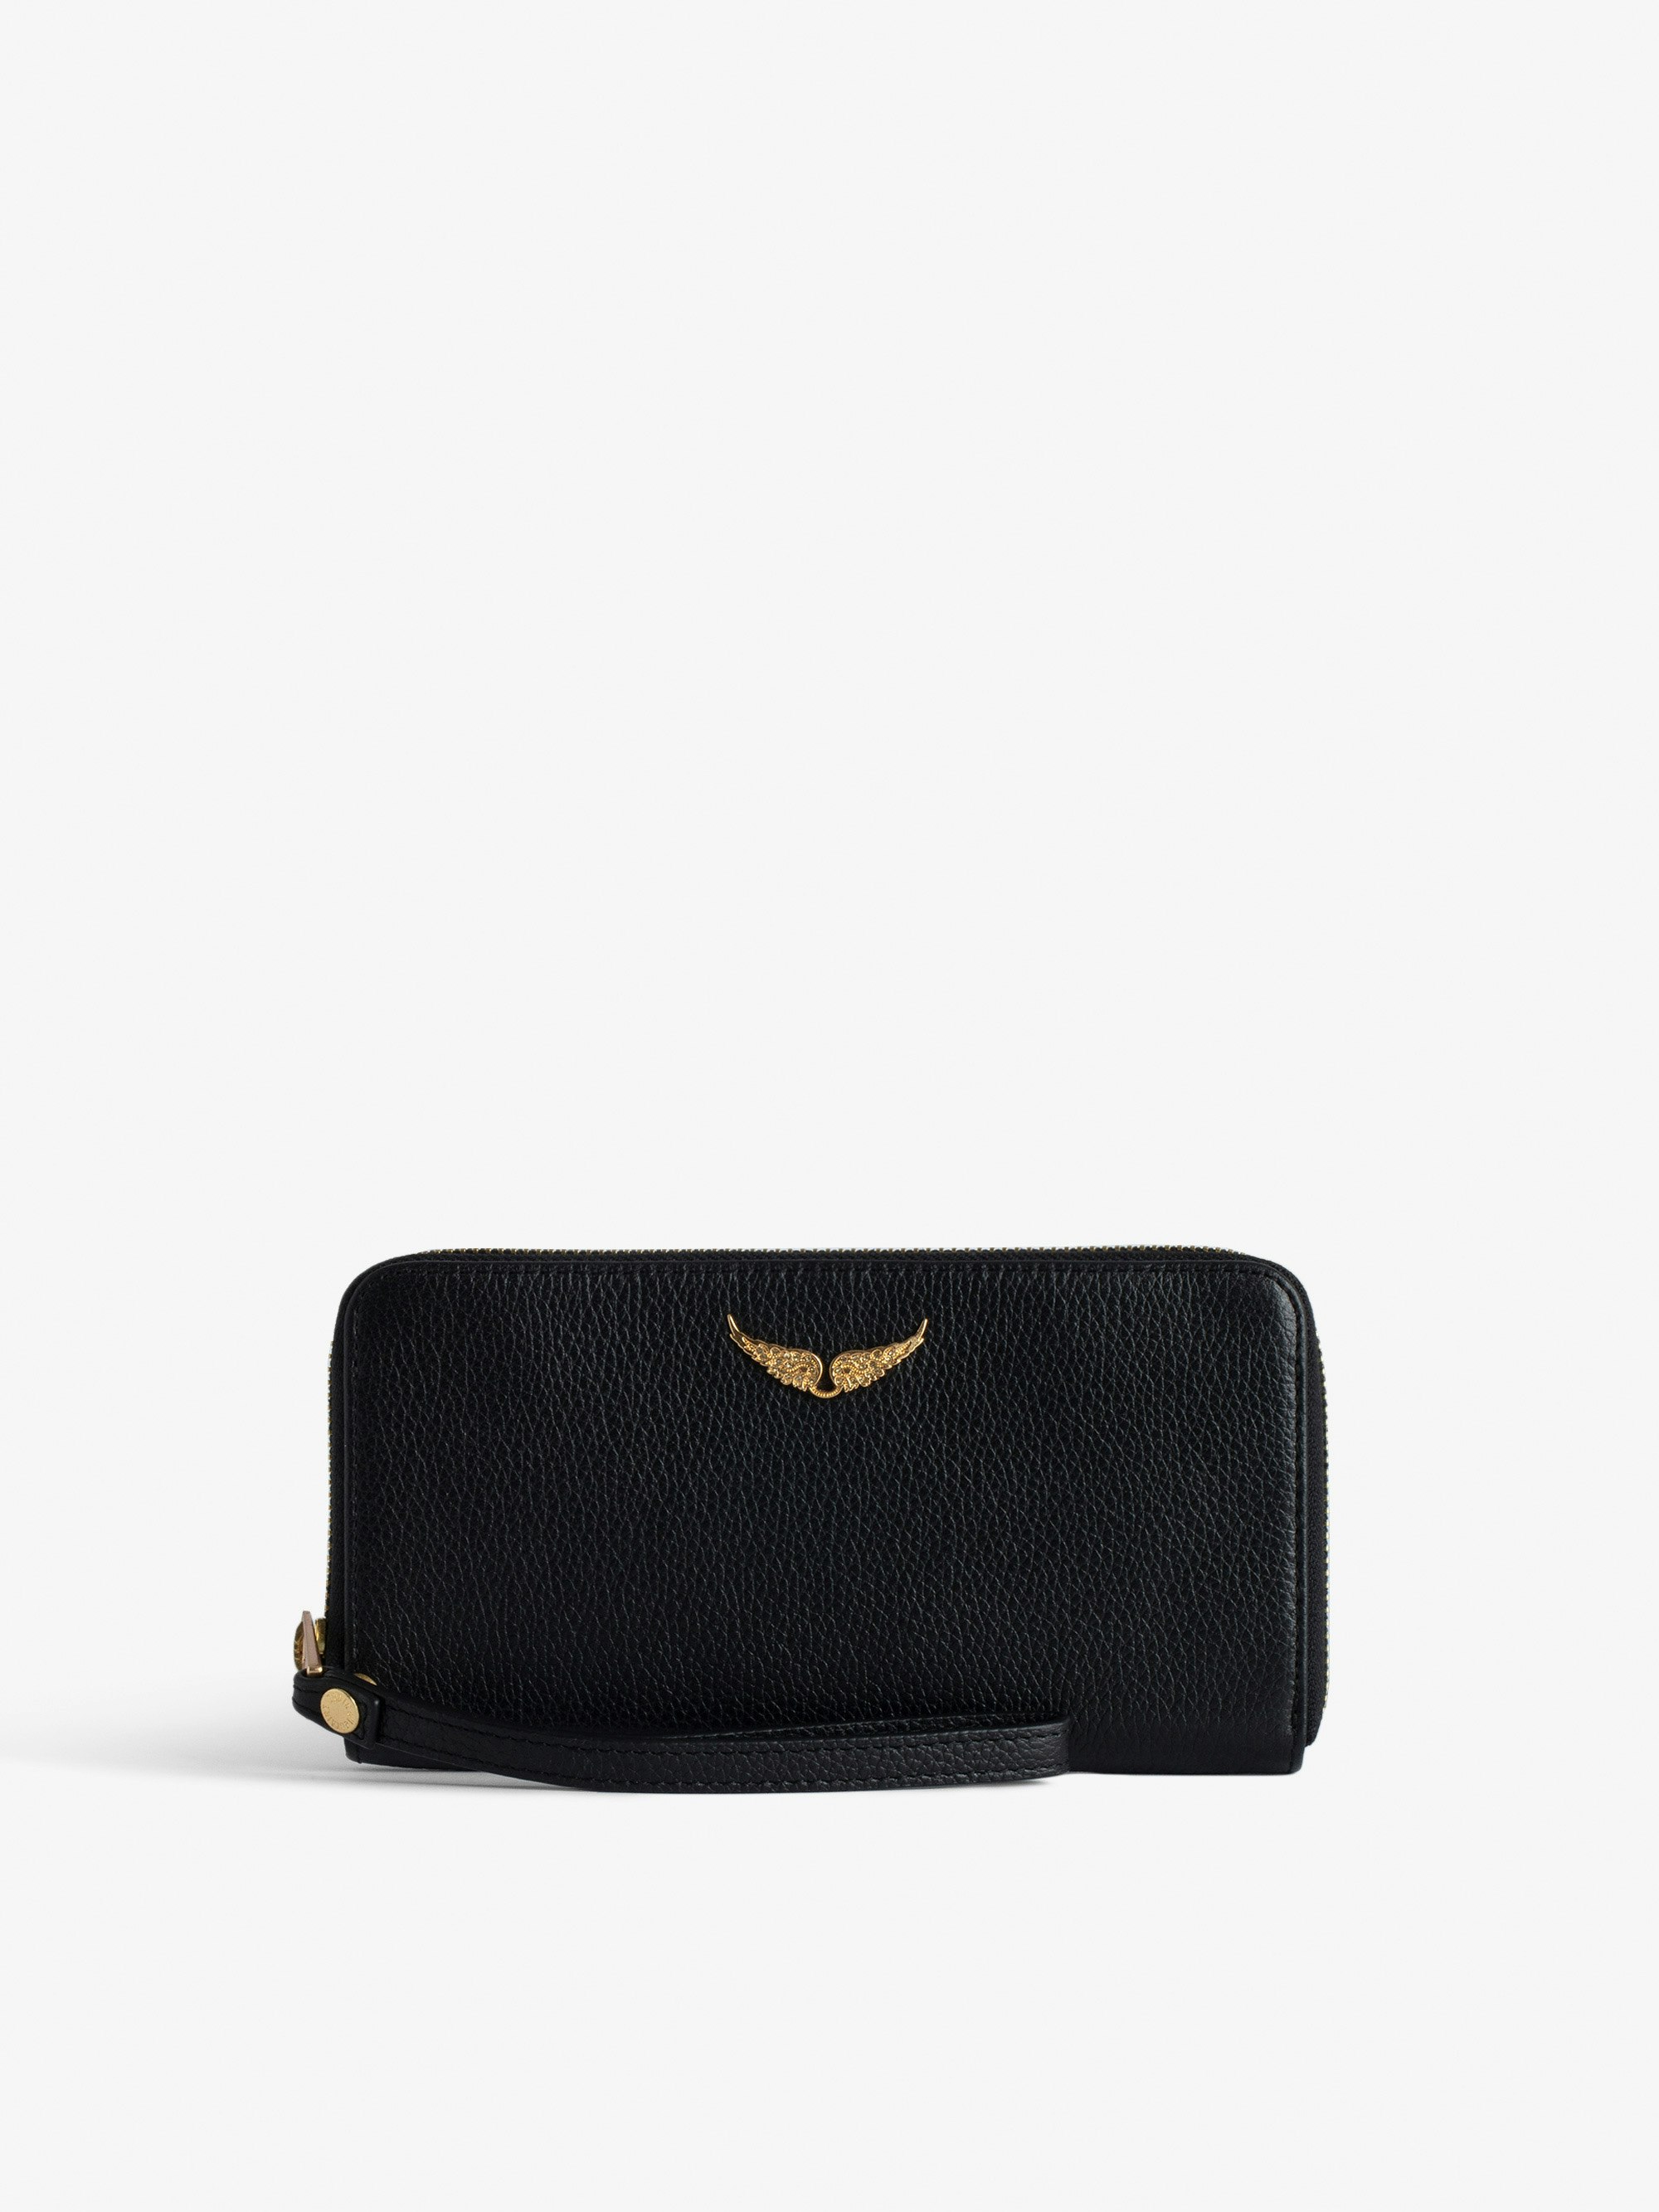 Portefeuille Compagnon - Portefeuille en cuir grainé noir orné d'un charm ailes.